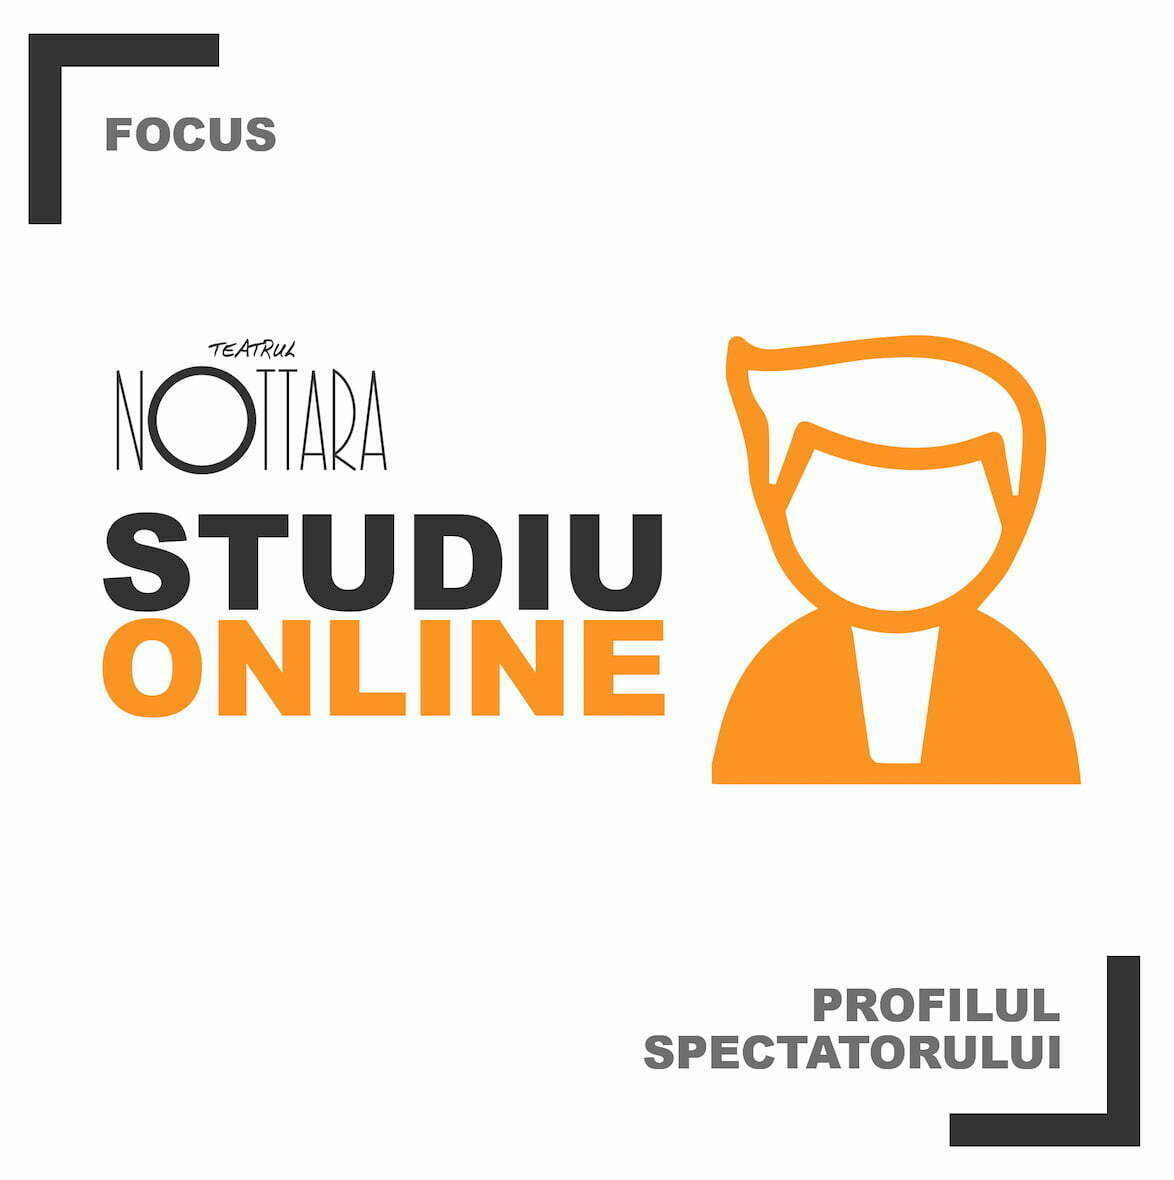 Studiu online cu focus pe profilul spectatorului, lansat de Teatrul Nottara